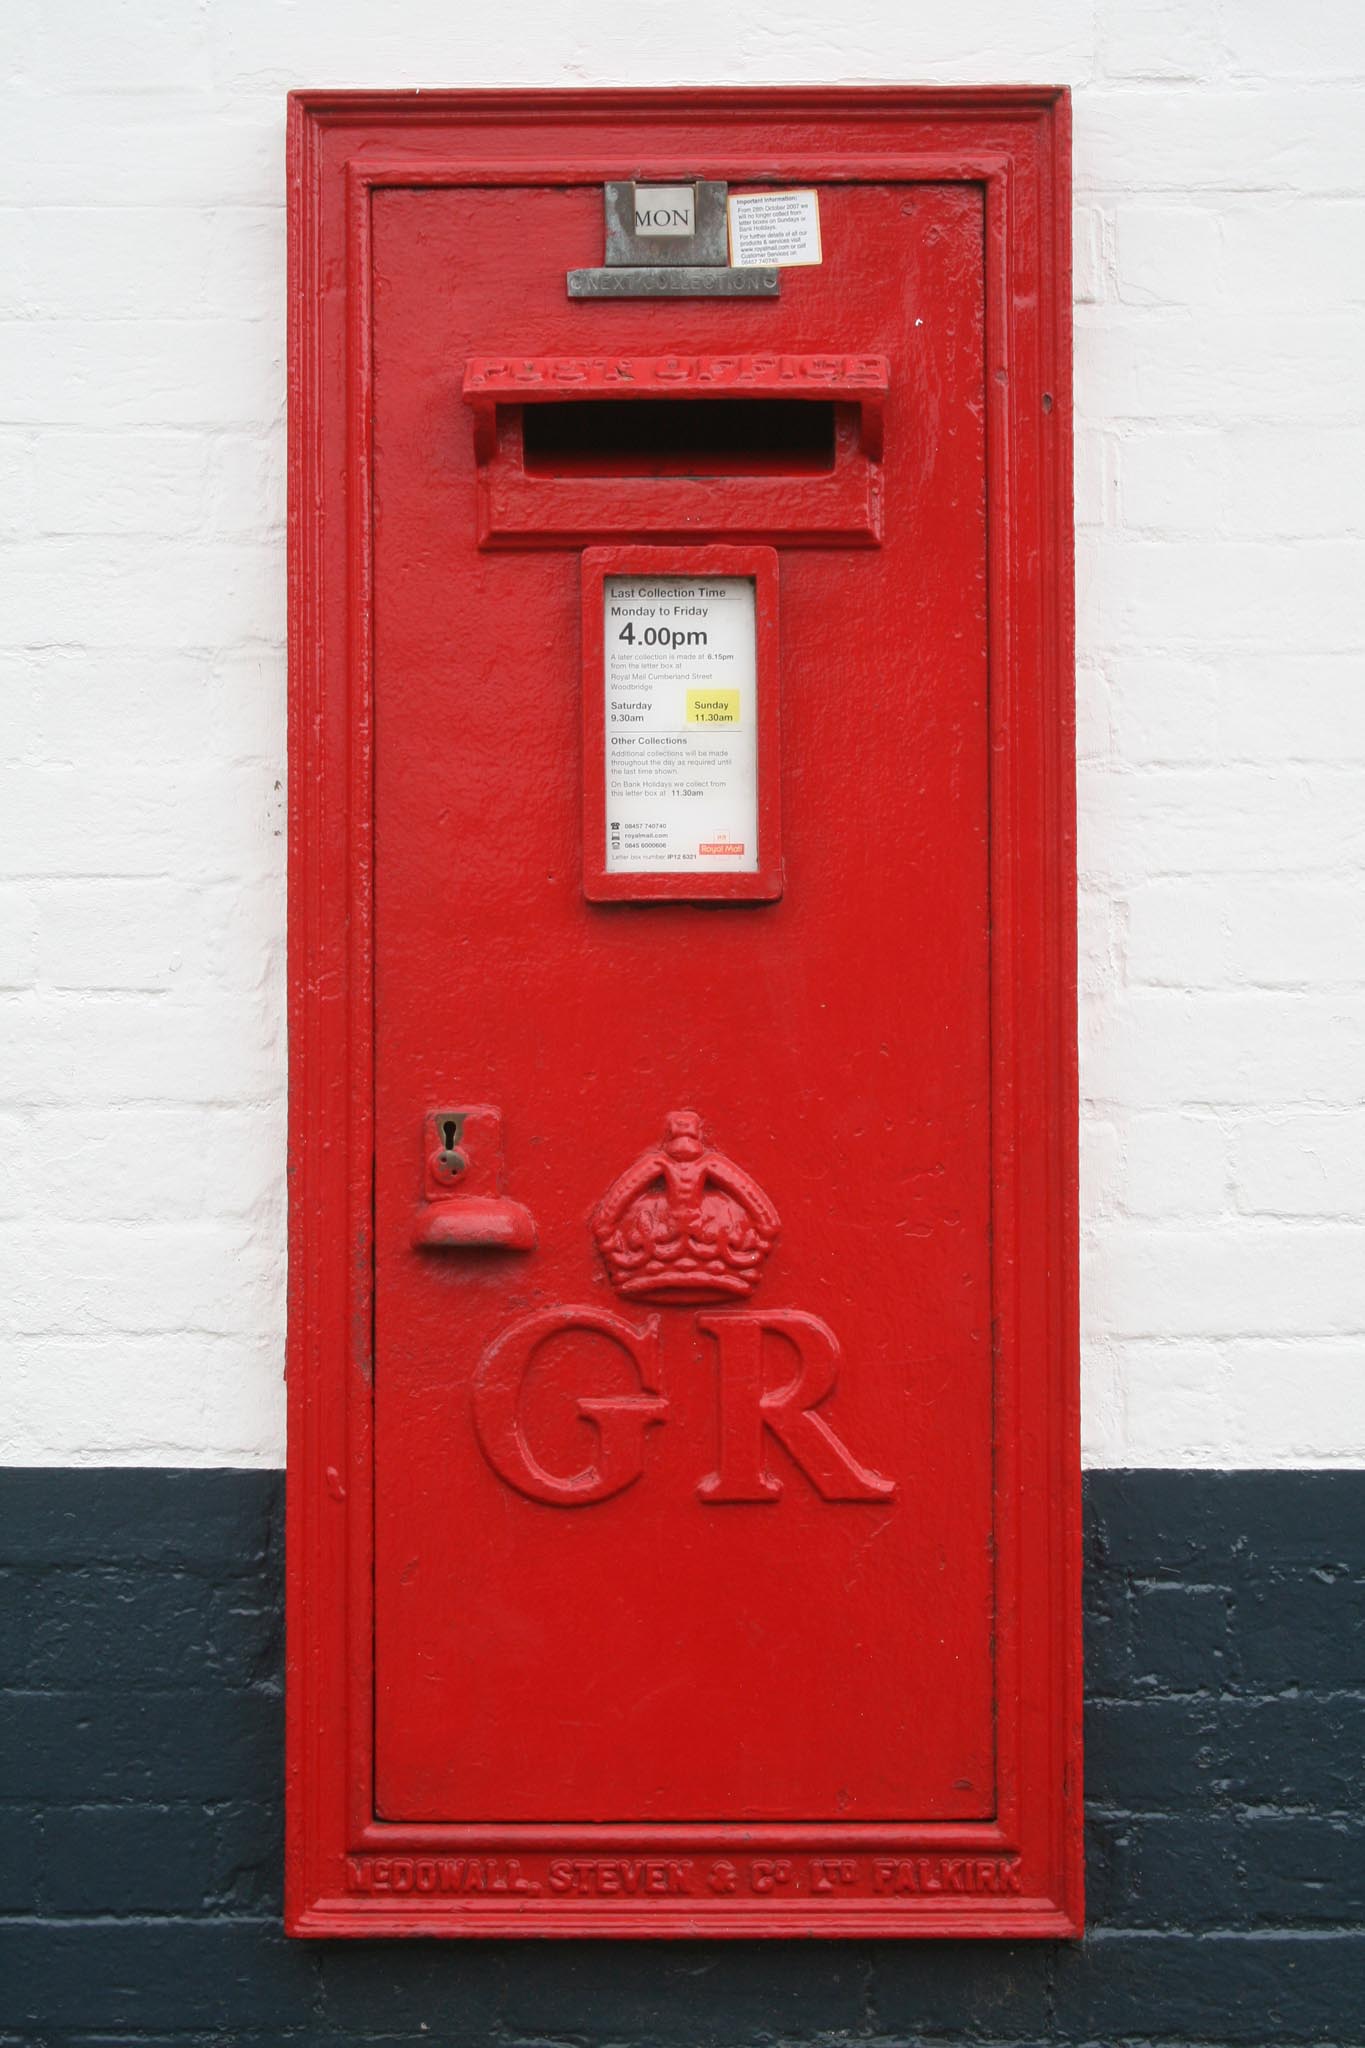 GR wall box 1930s, Suffolk. Robert Cole